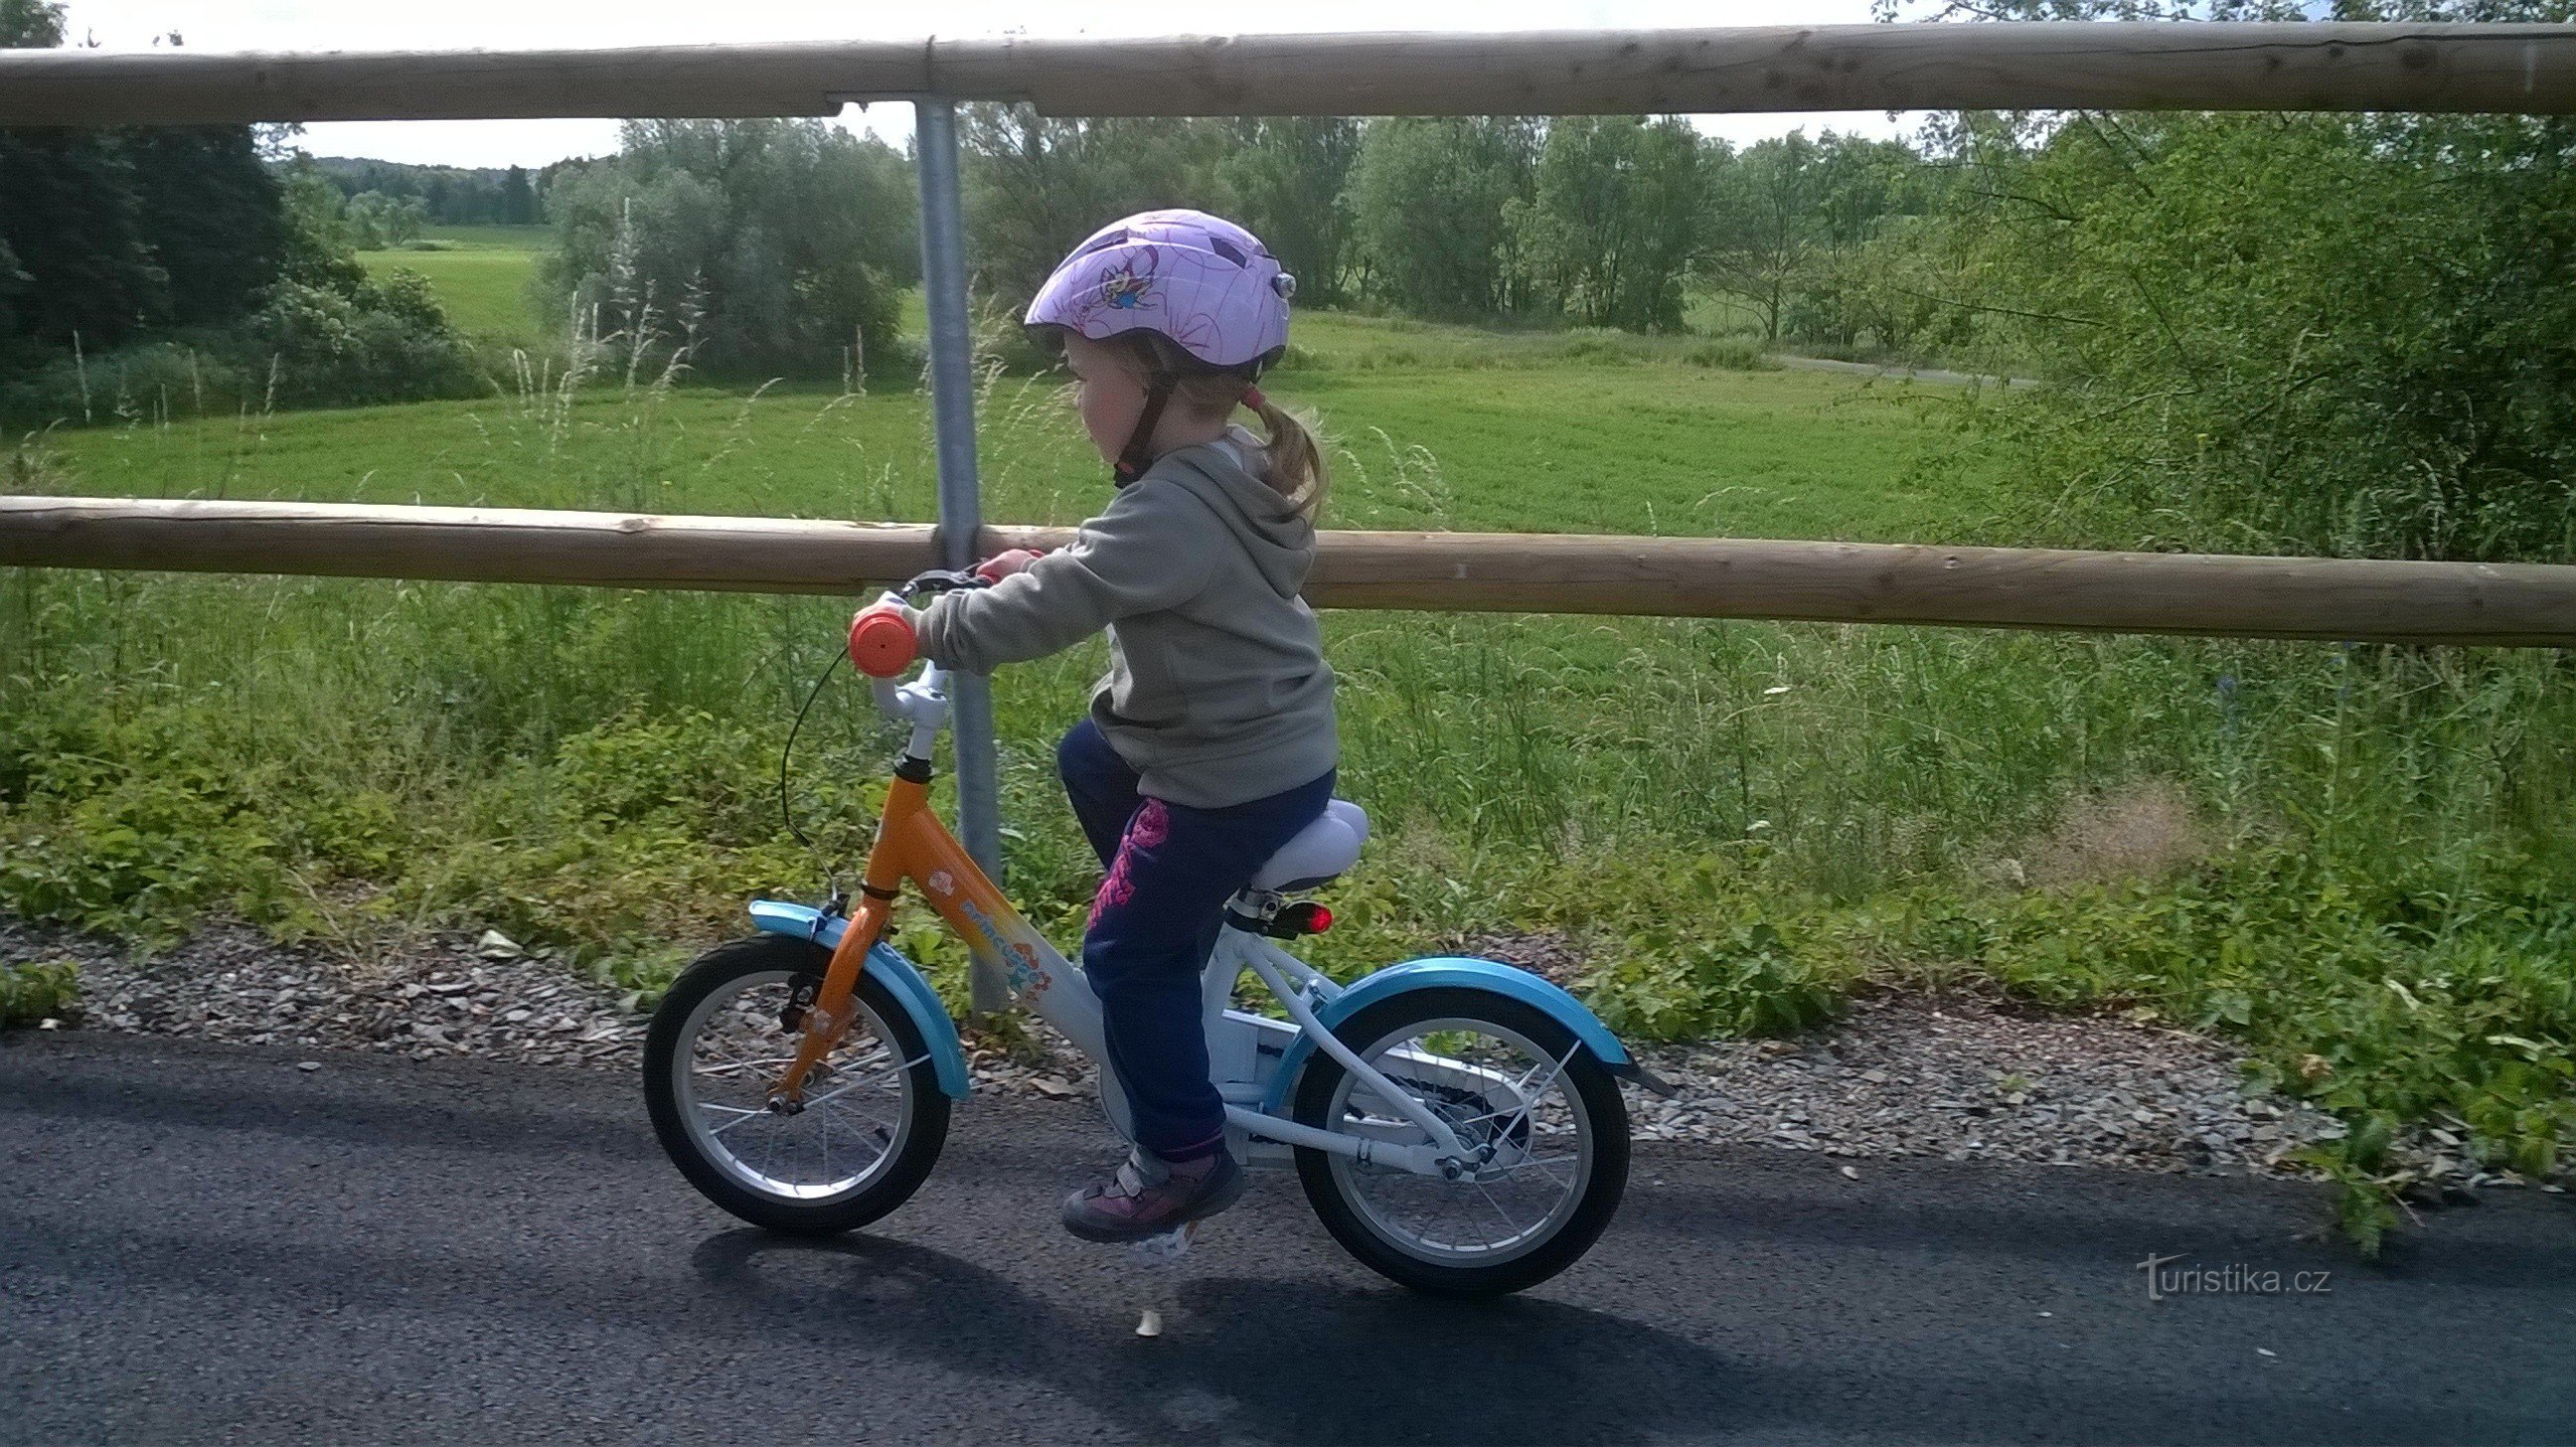 Τα παιδιά με ποδήλατα θα διασκεδάσουν, η πίστα δεν είναι δύσκολη στην ανάβαση